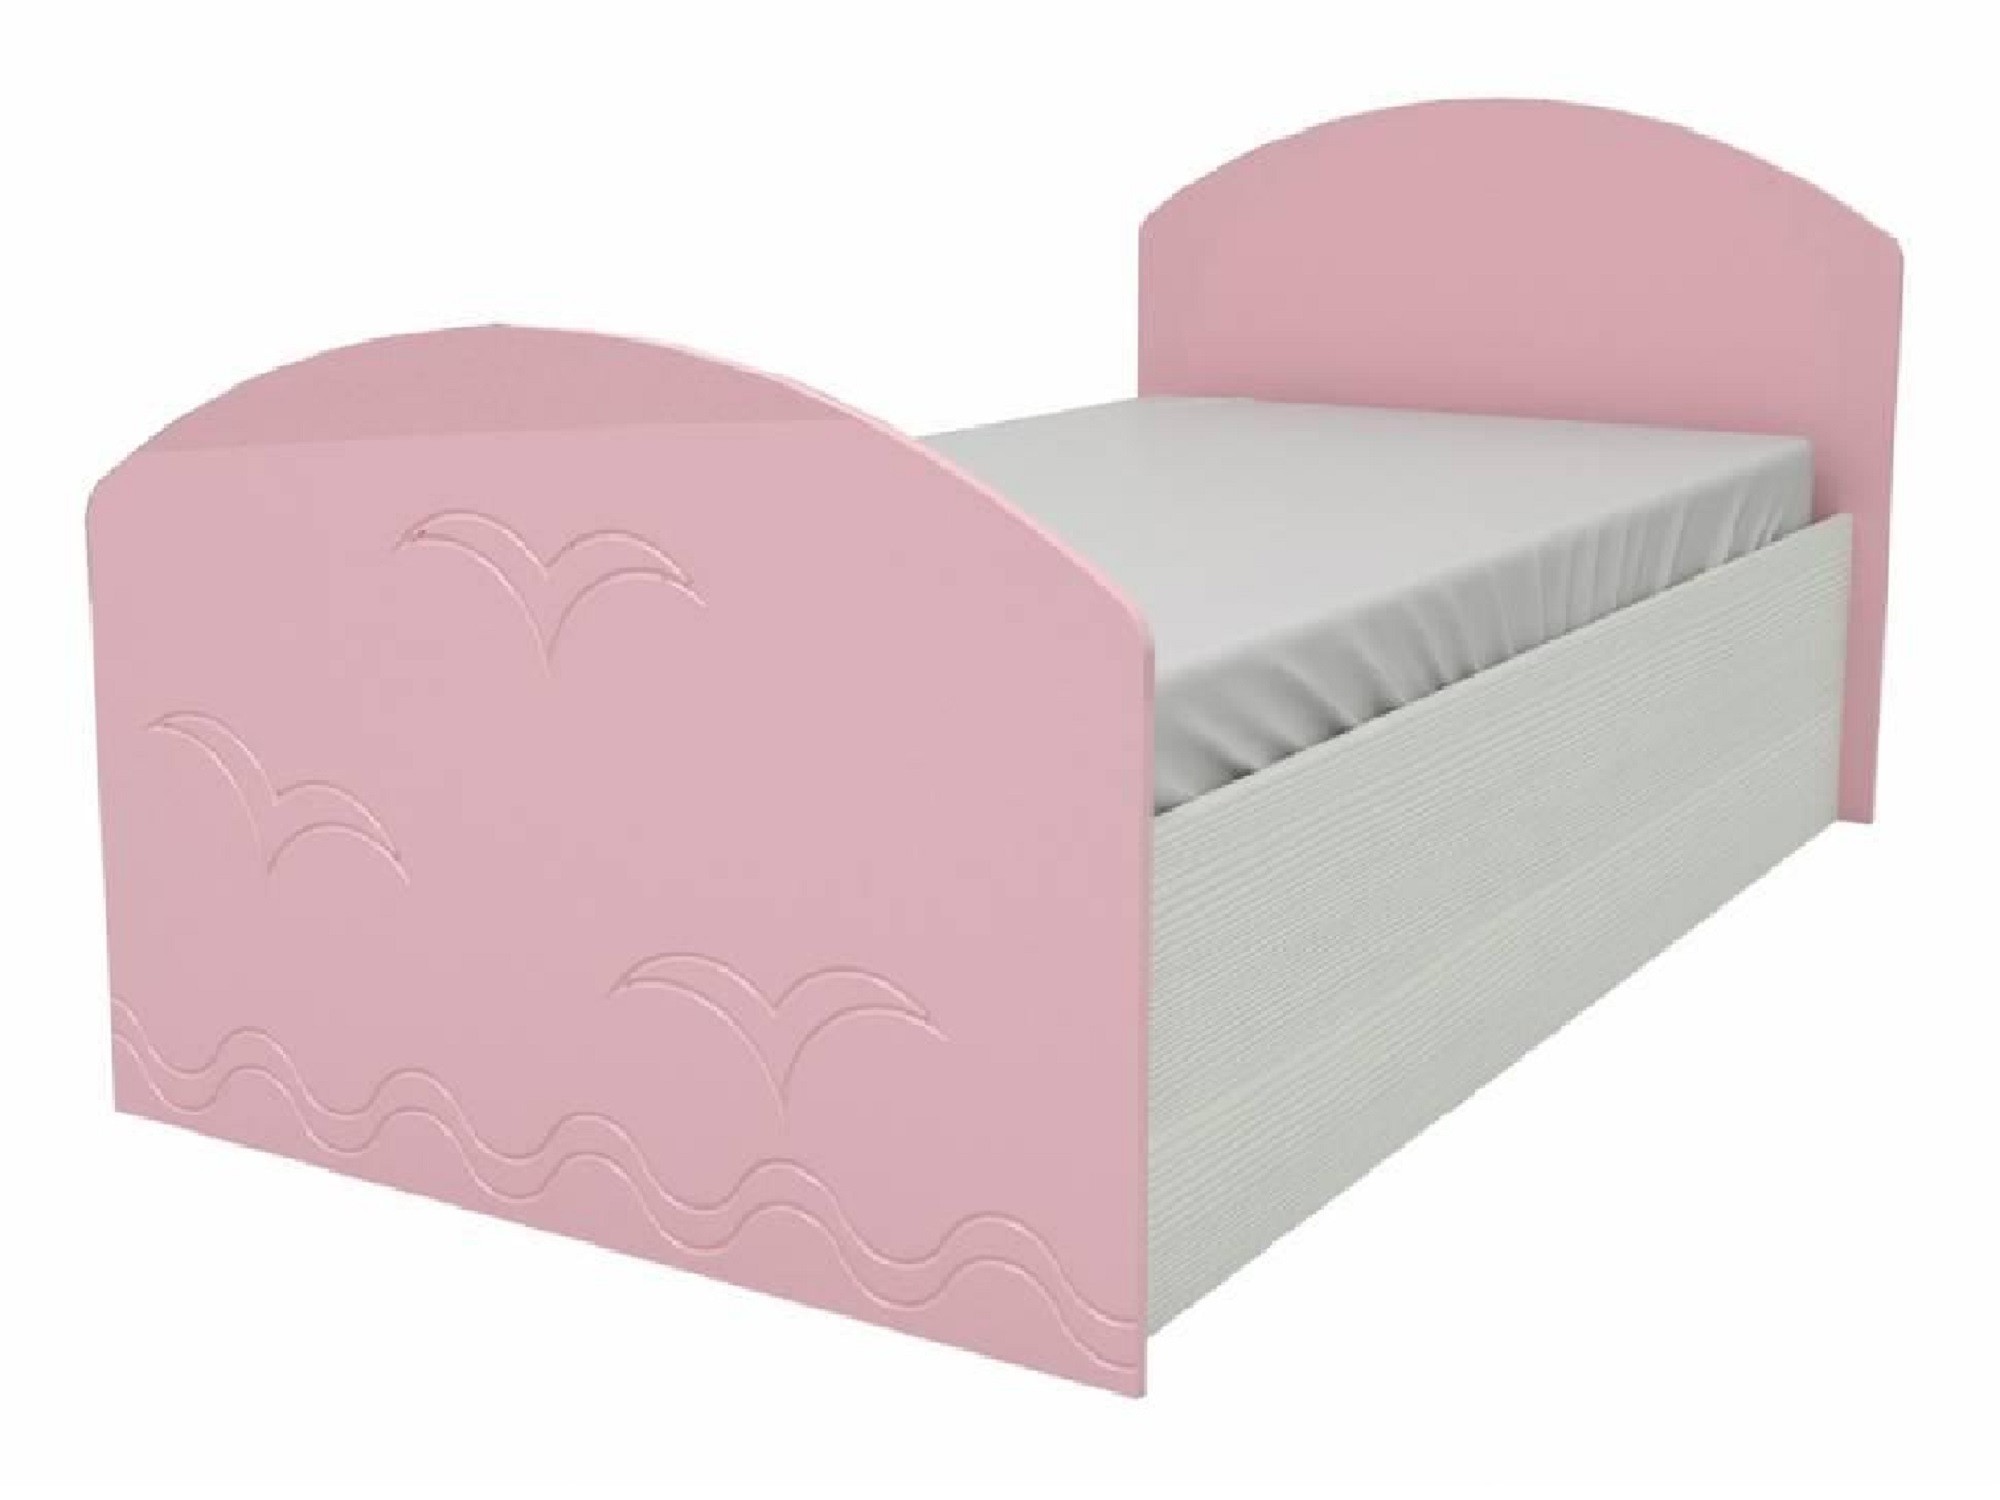 Юниор-2 Детская кровать 80, металлик (Розовый металлик, Дуб белёный) Дуб белёный, МДФ, ЛДСП юниор 2 детская кровать 80 металлик салат металл дуб белёный дуб белёный мдф лдсп